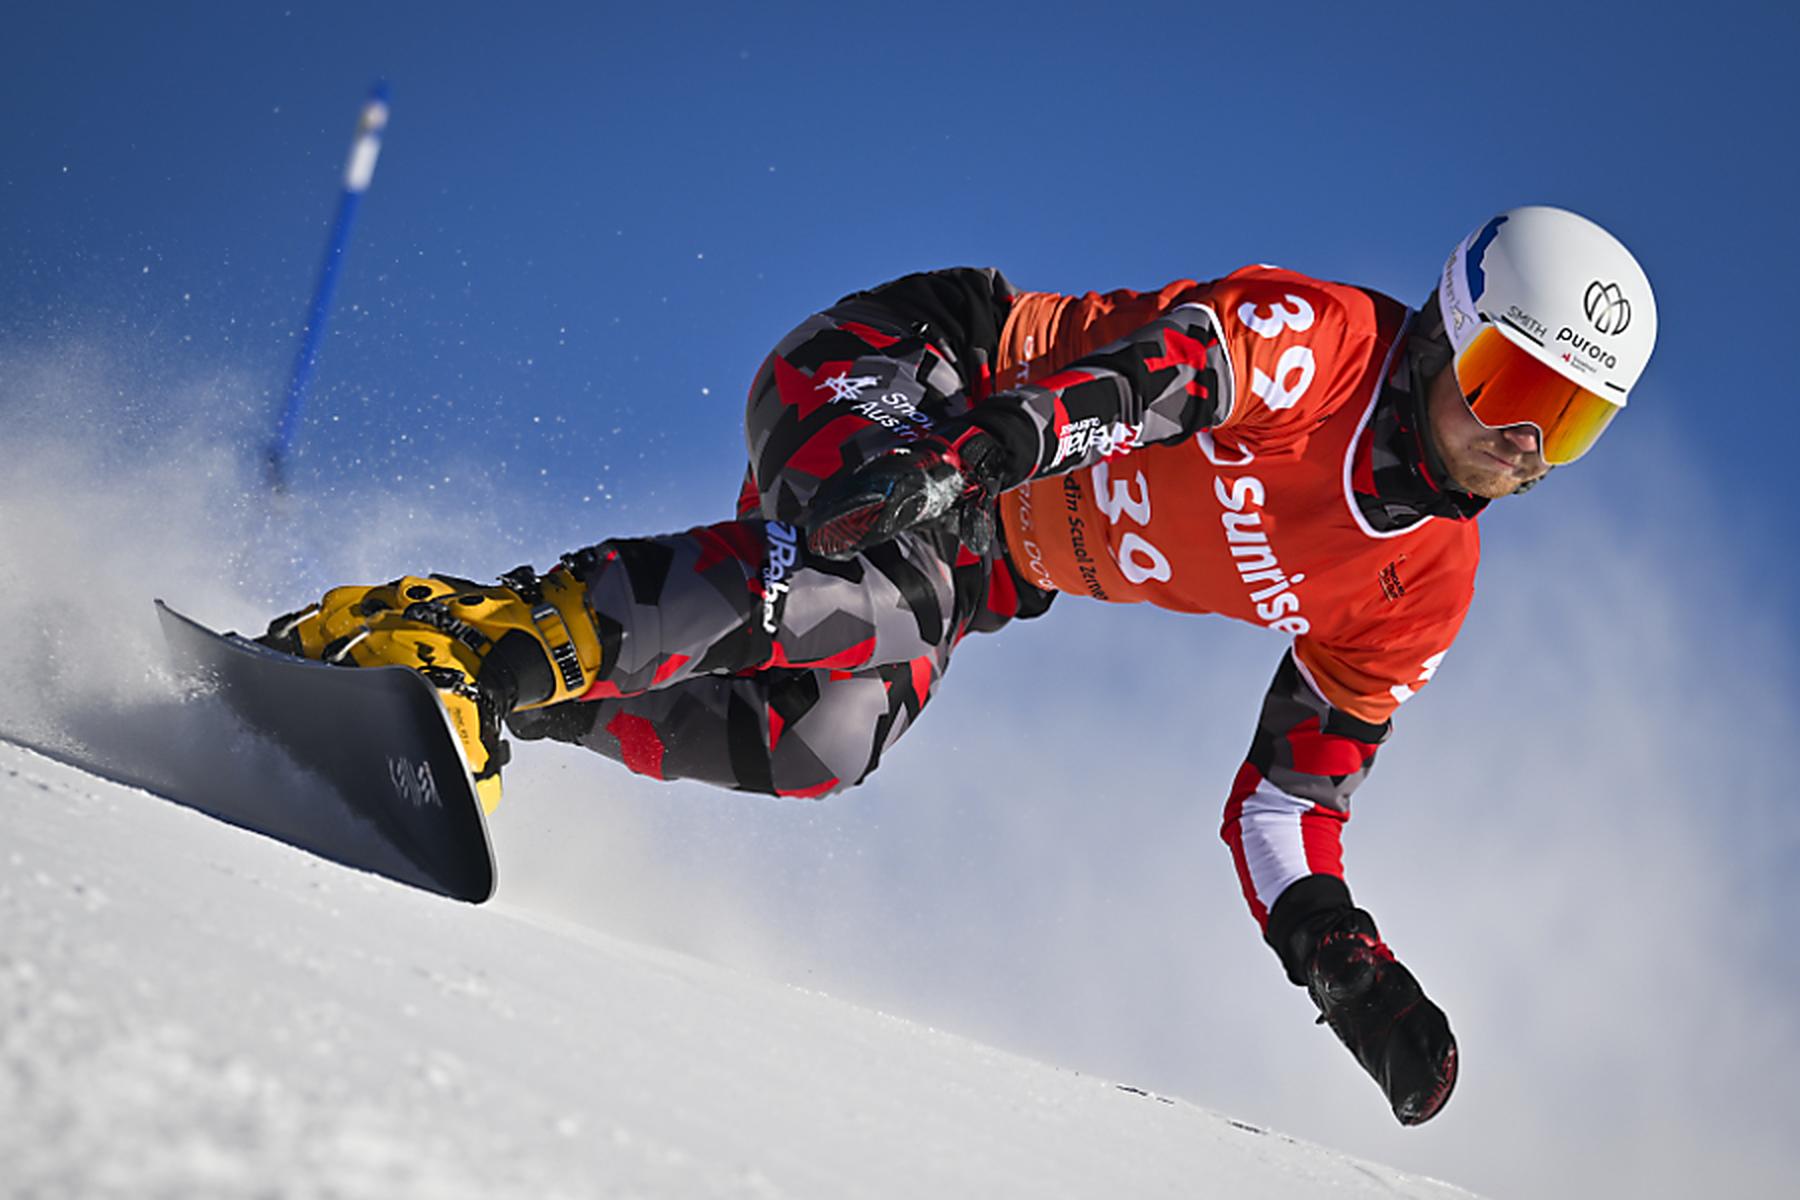 Krynica-Zdroj: Snowboarder Auner gewann Parallel-Riesentorlauf in Polen